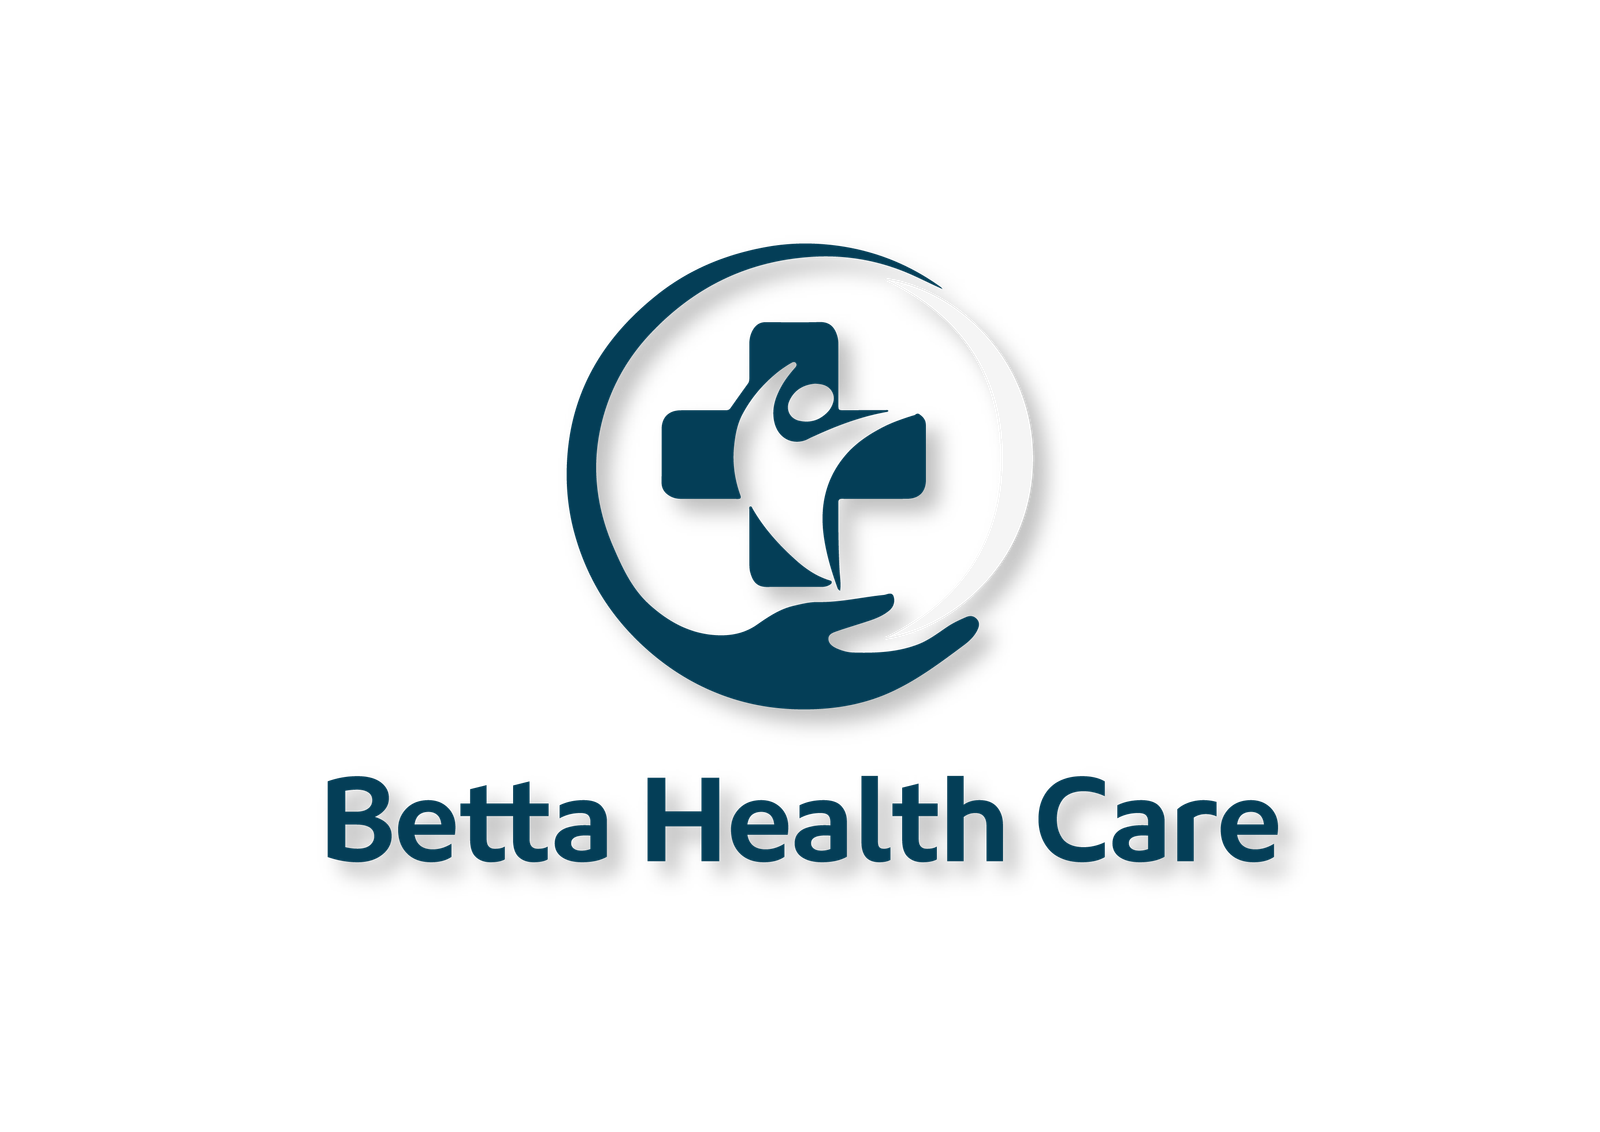 The Betta Health Care logo